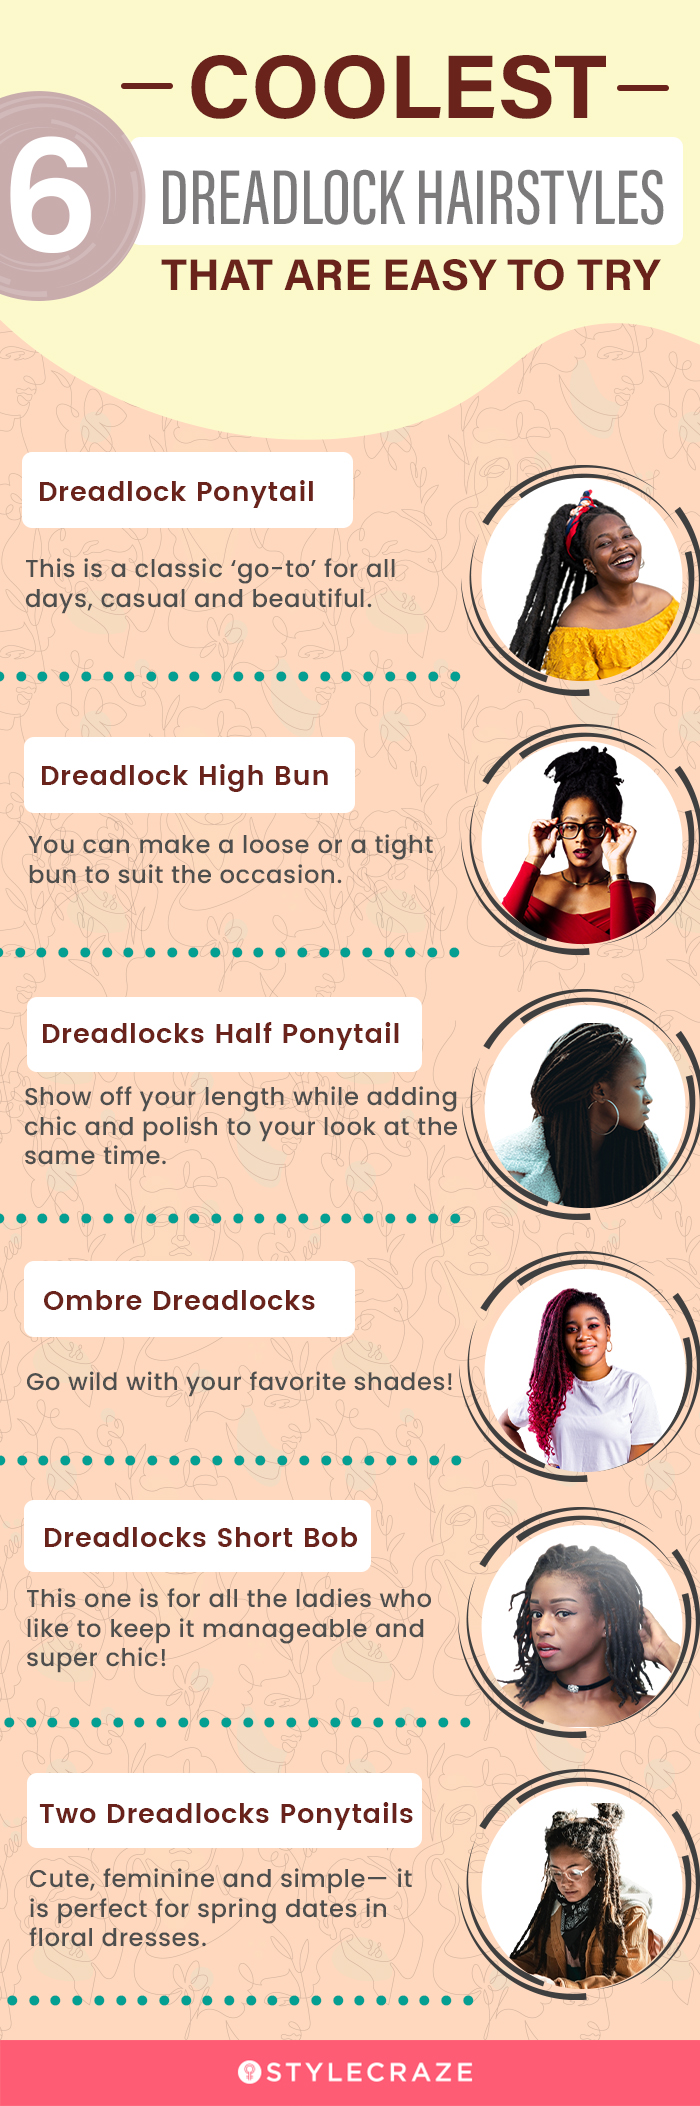 Top 27 Best-Looking Dreadlock Hairstyles